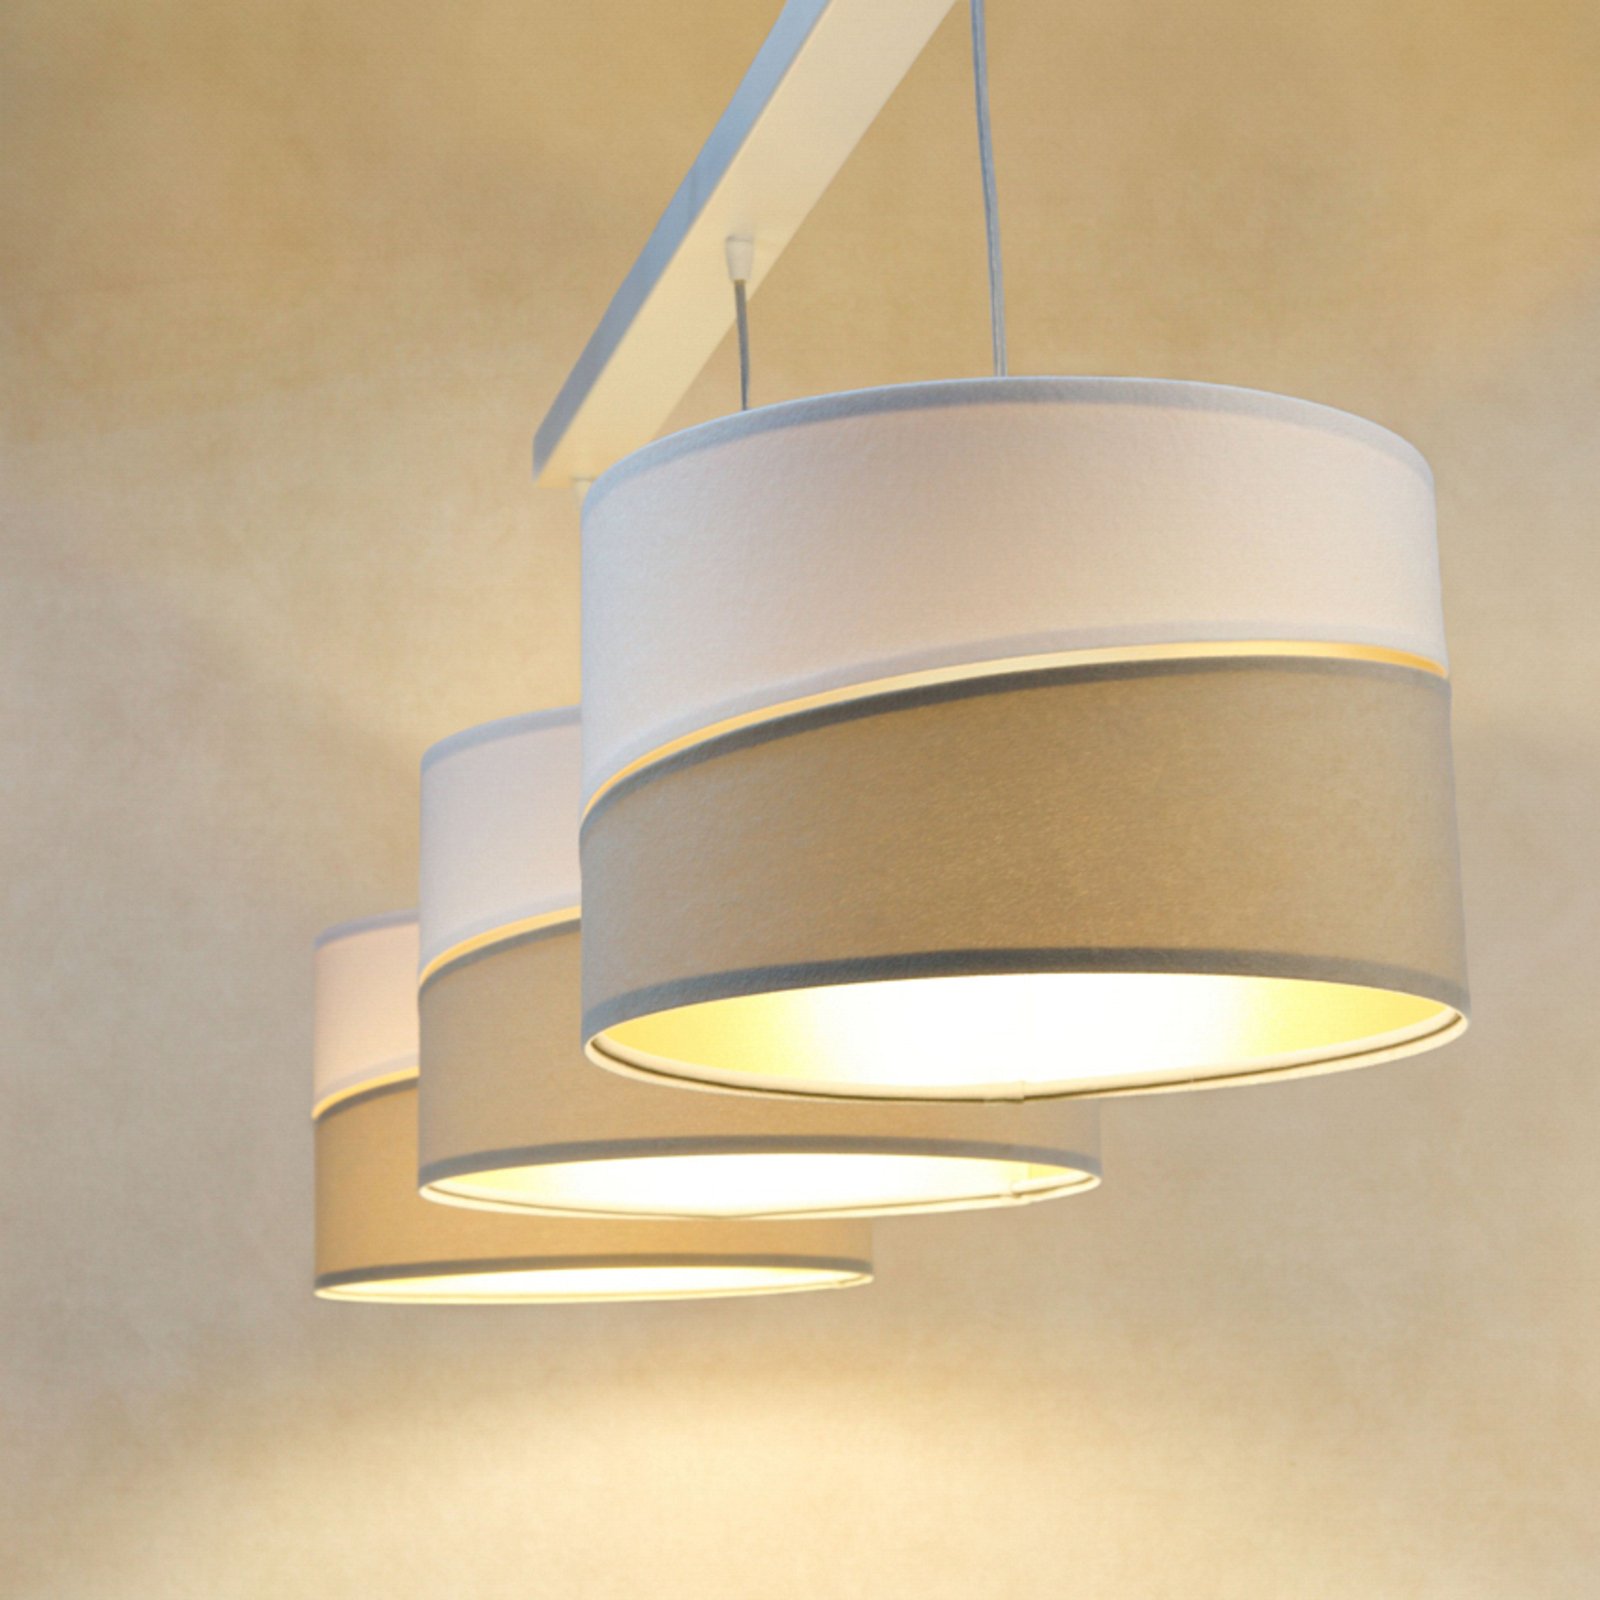 Susan hængelampe, 3 lyskilder, hvid/beige/guld